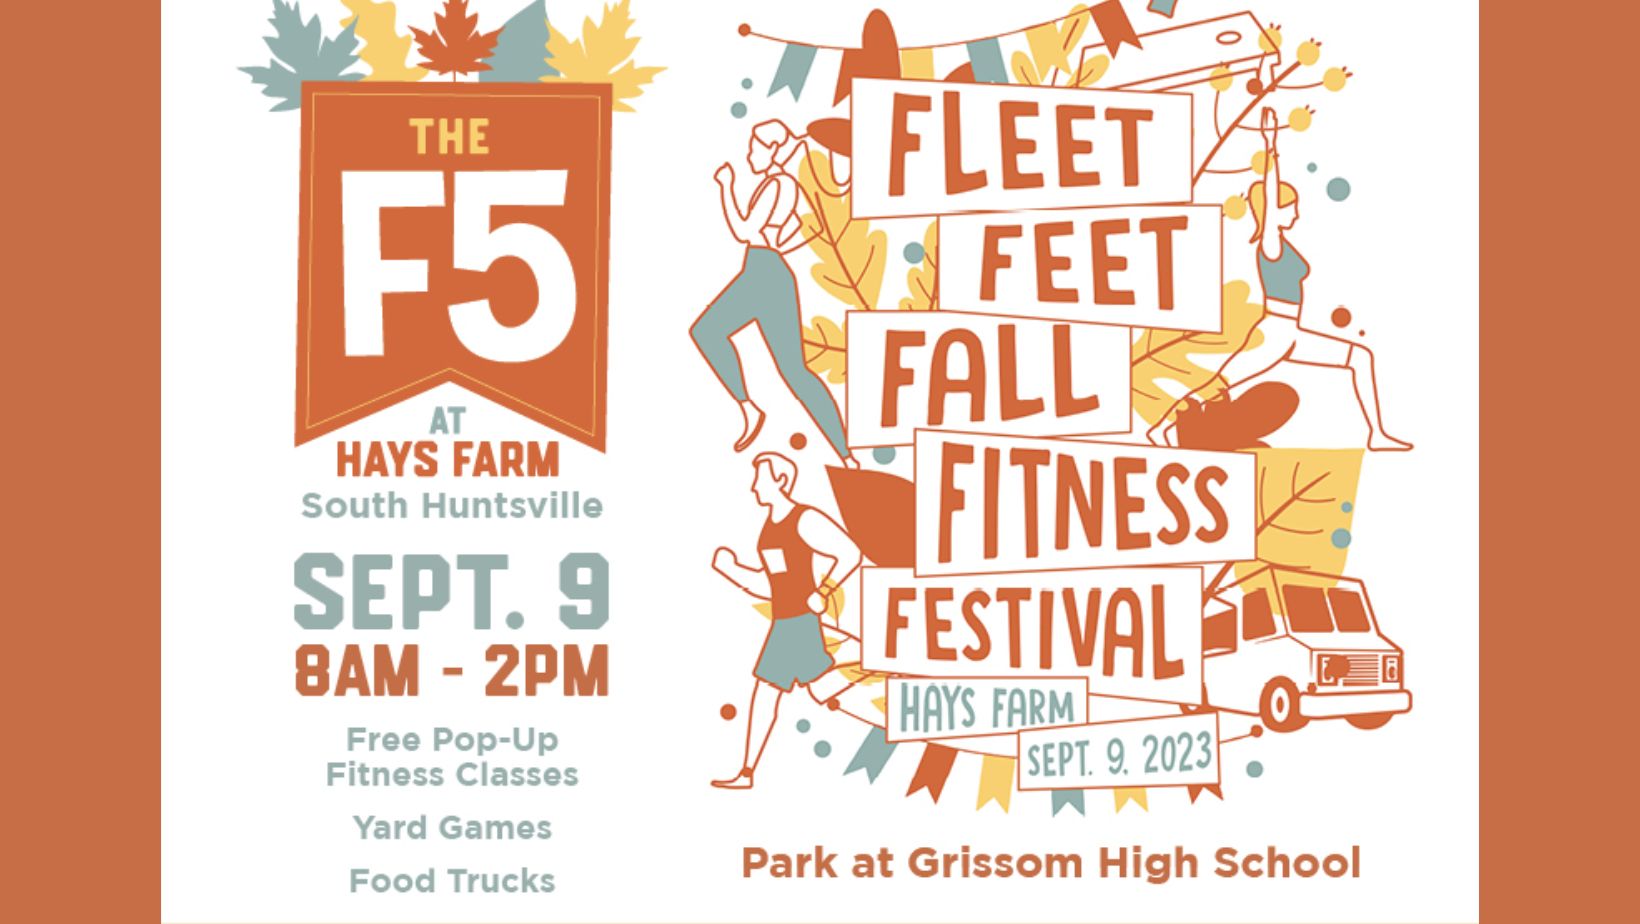 Fleet Feet Fall Fitness Festival – Rocket City Mom | Huntsville events ...